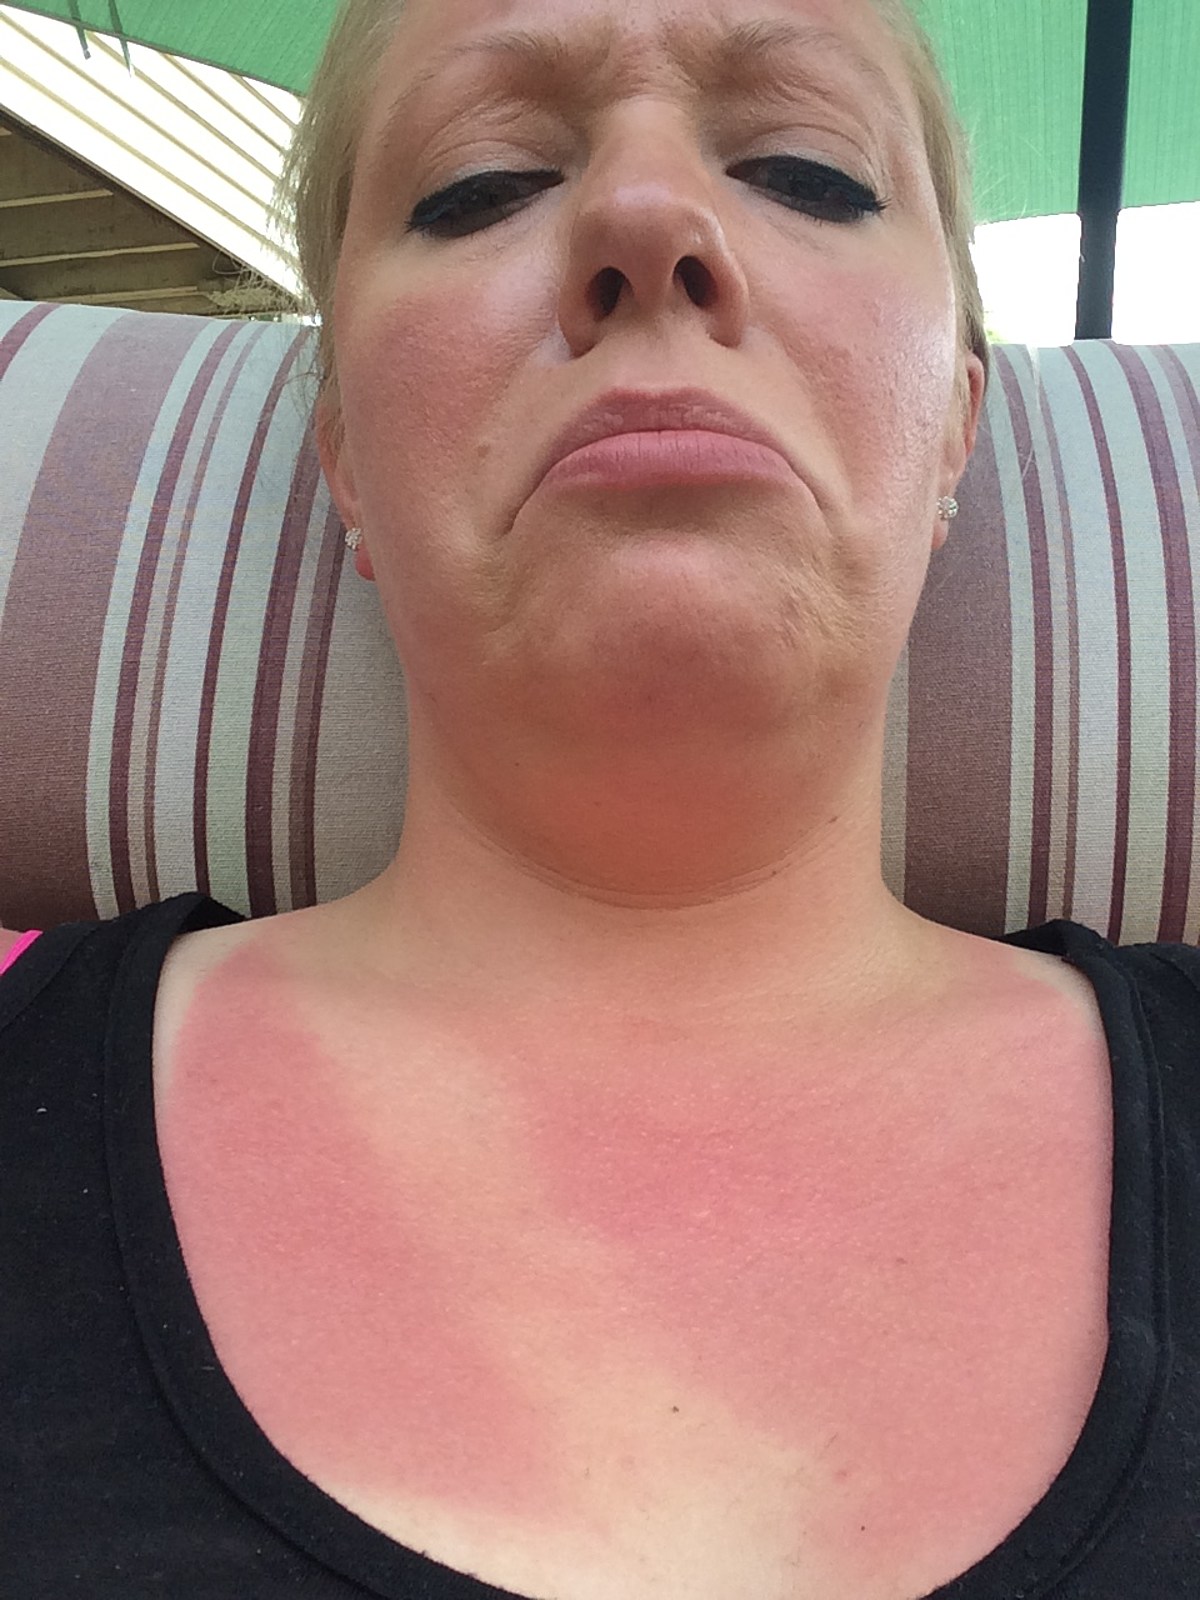 Worst Sunburn Fails Ever [PHOTOS]